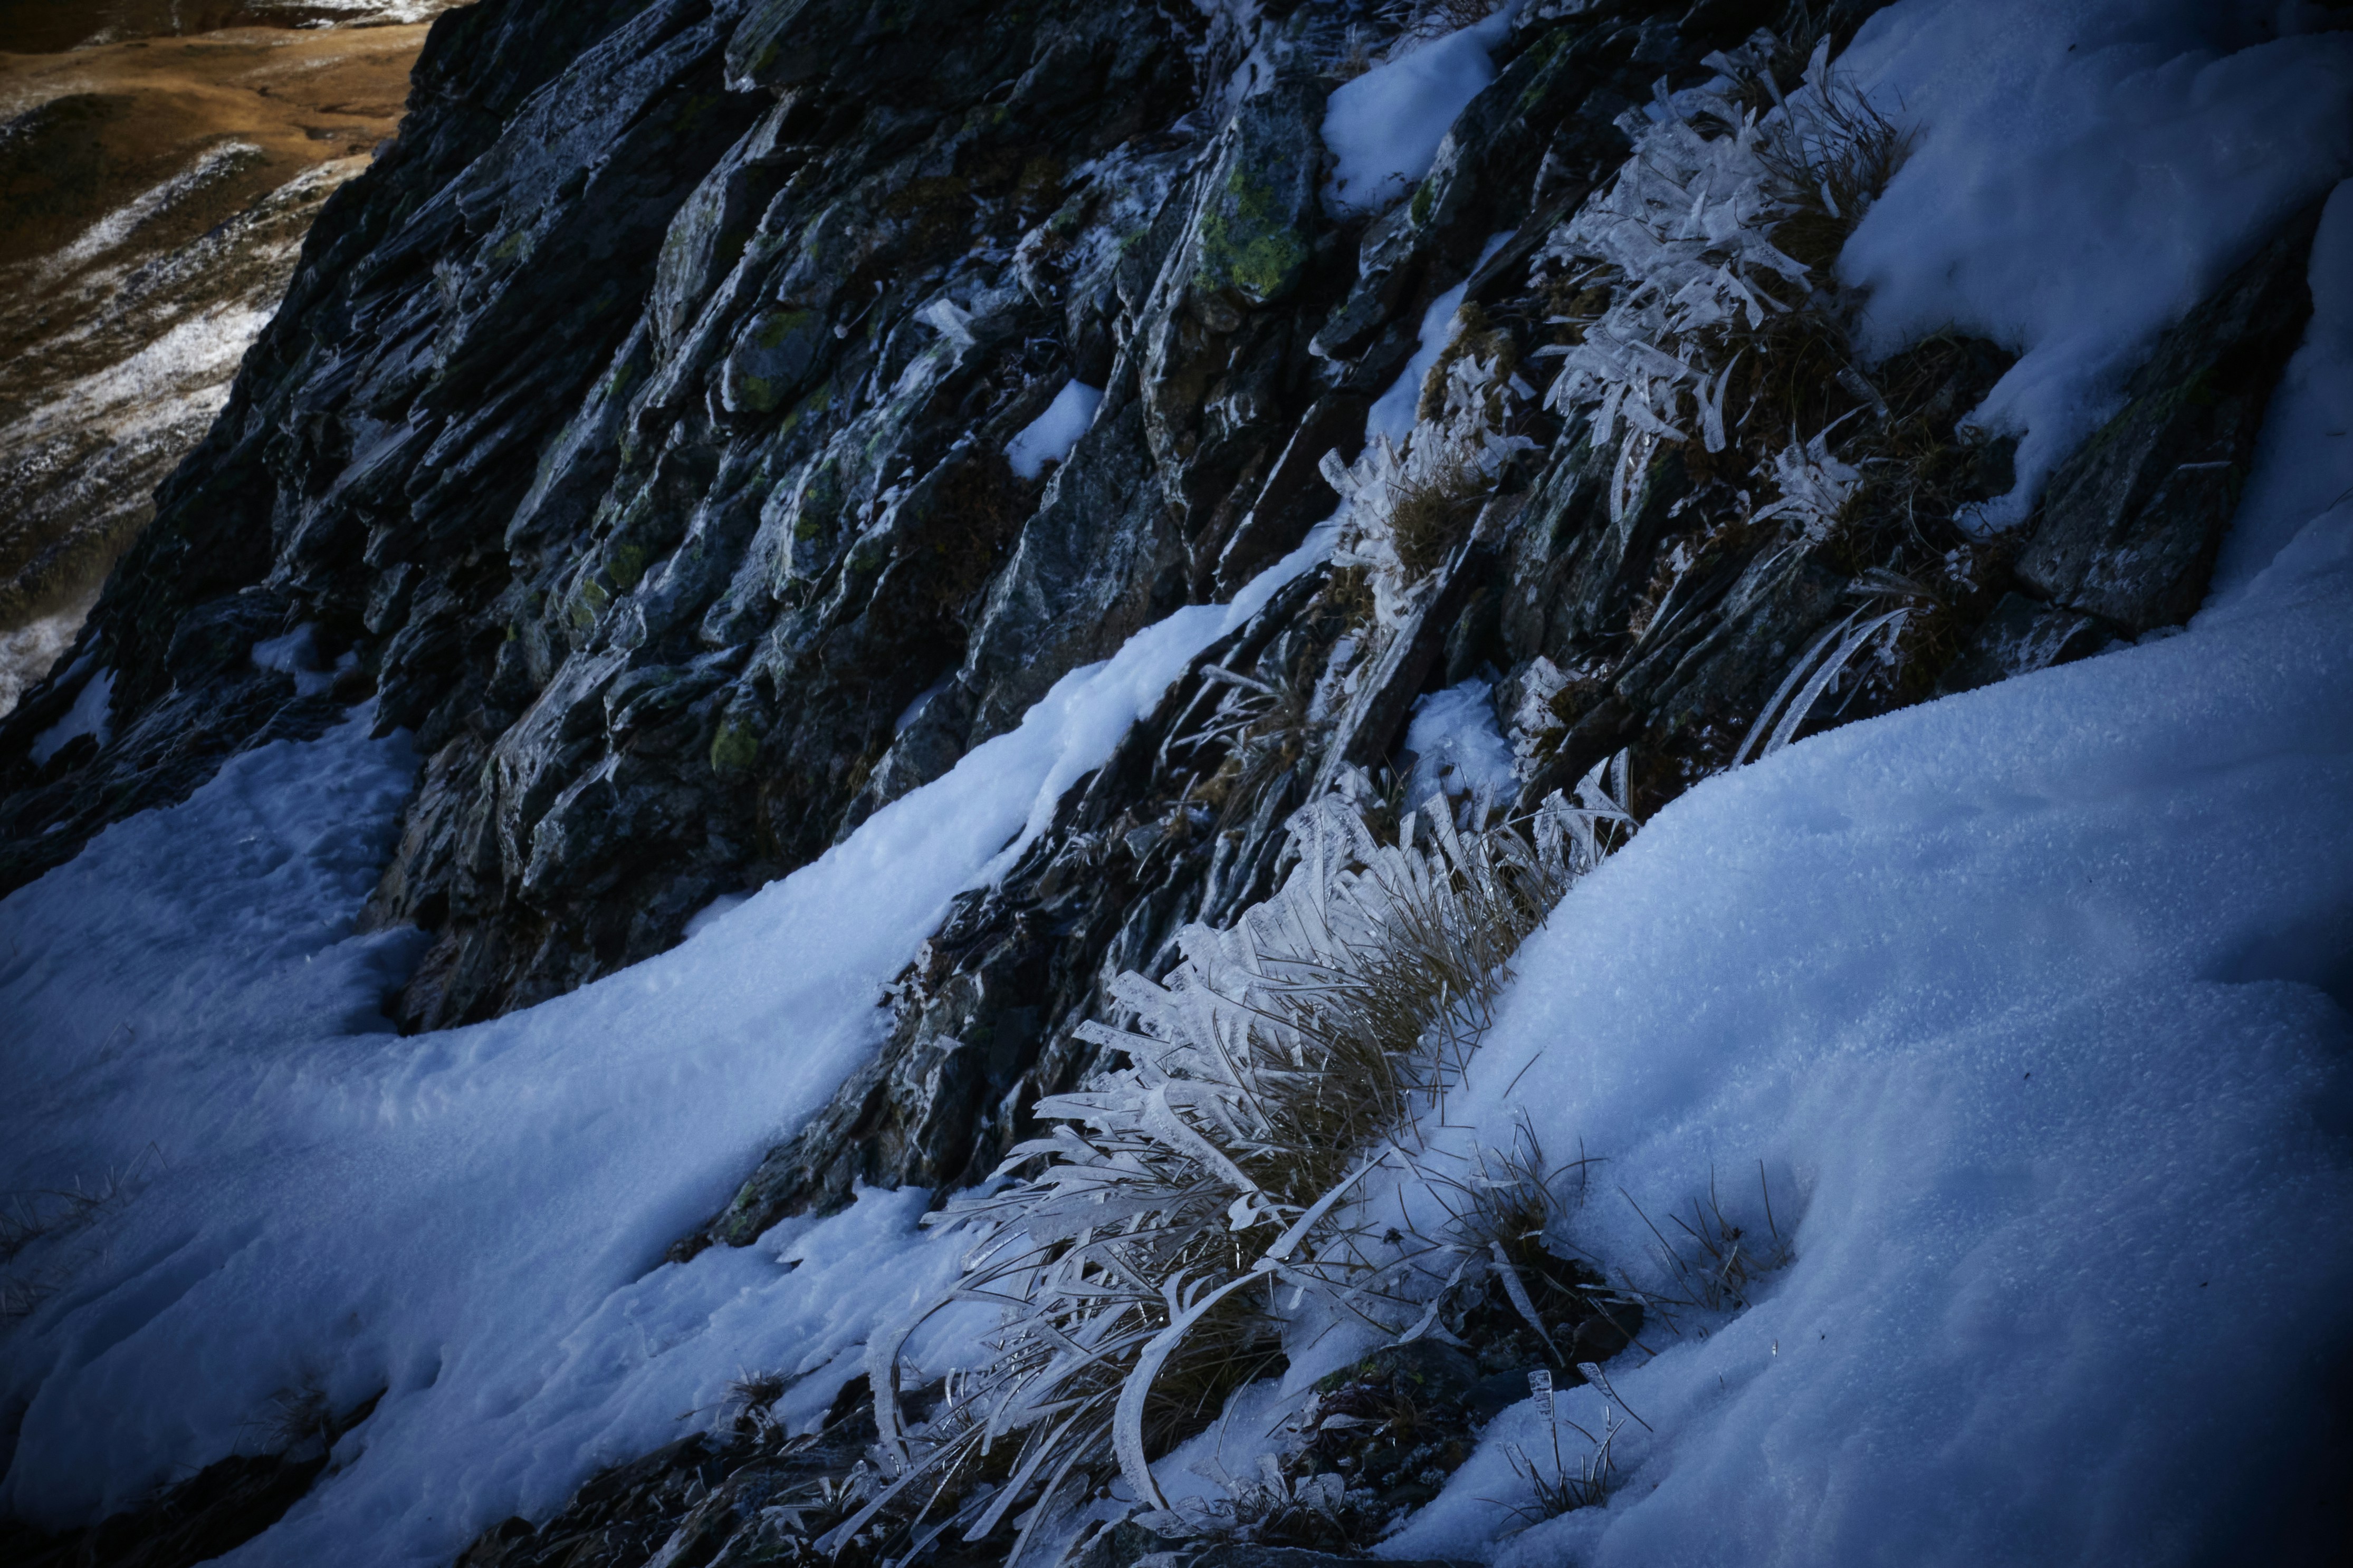 Frozen grass on Pic de Marioule